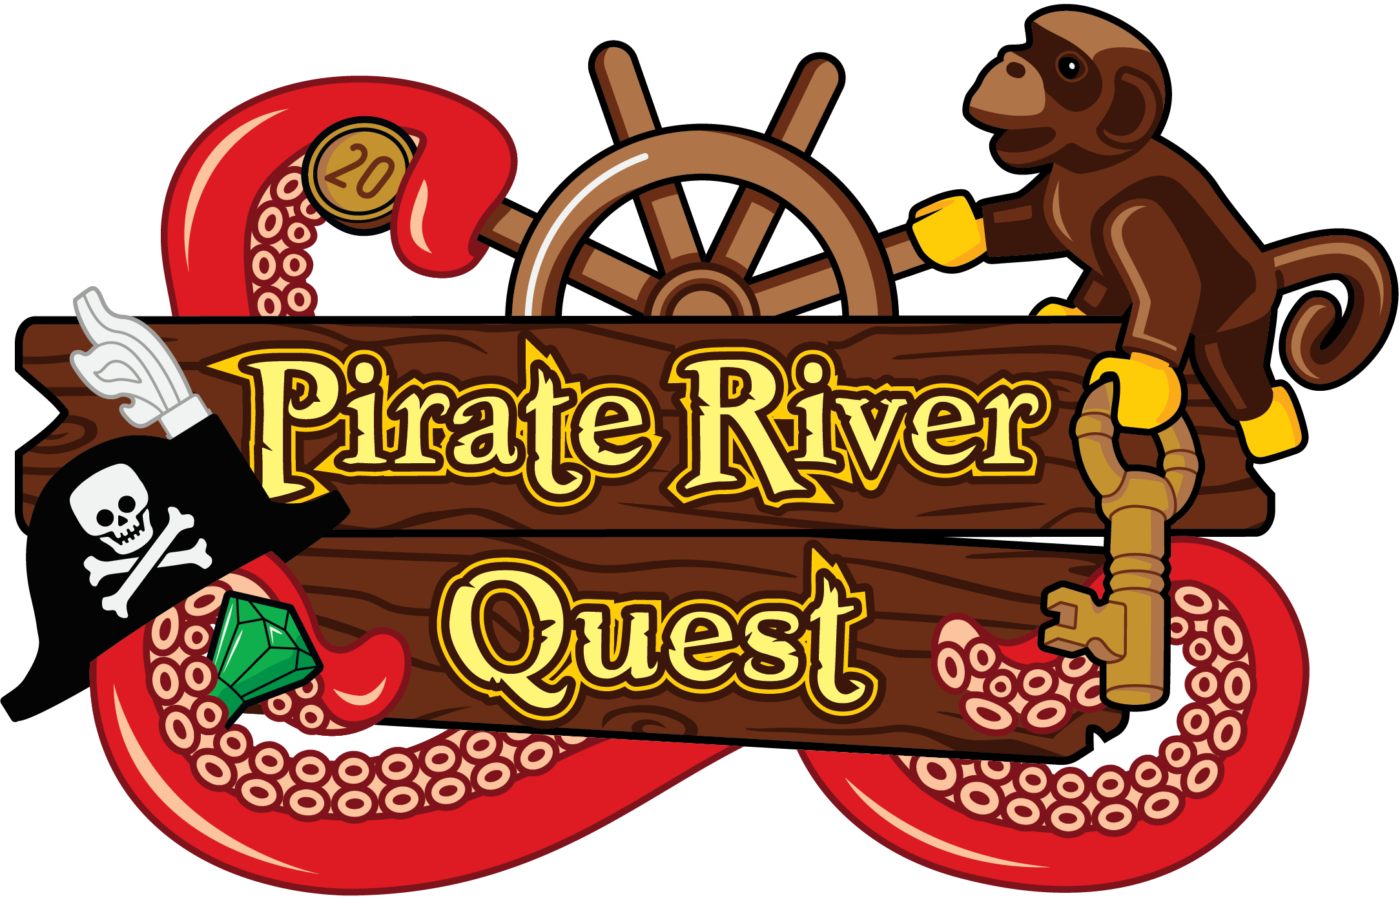 Pirate River Quest at Legoland Florida Resort 2023